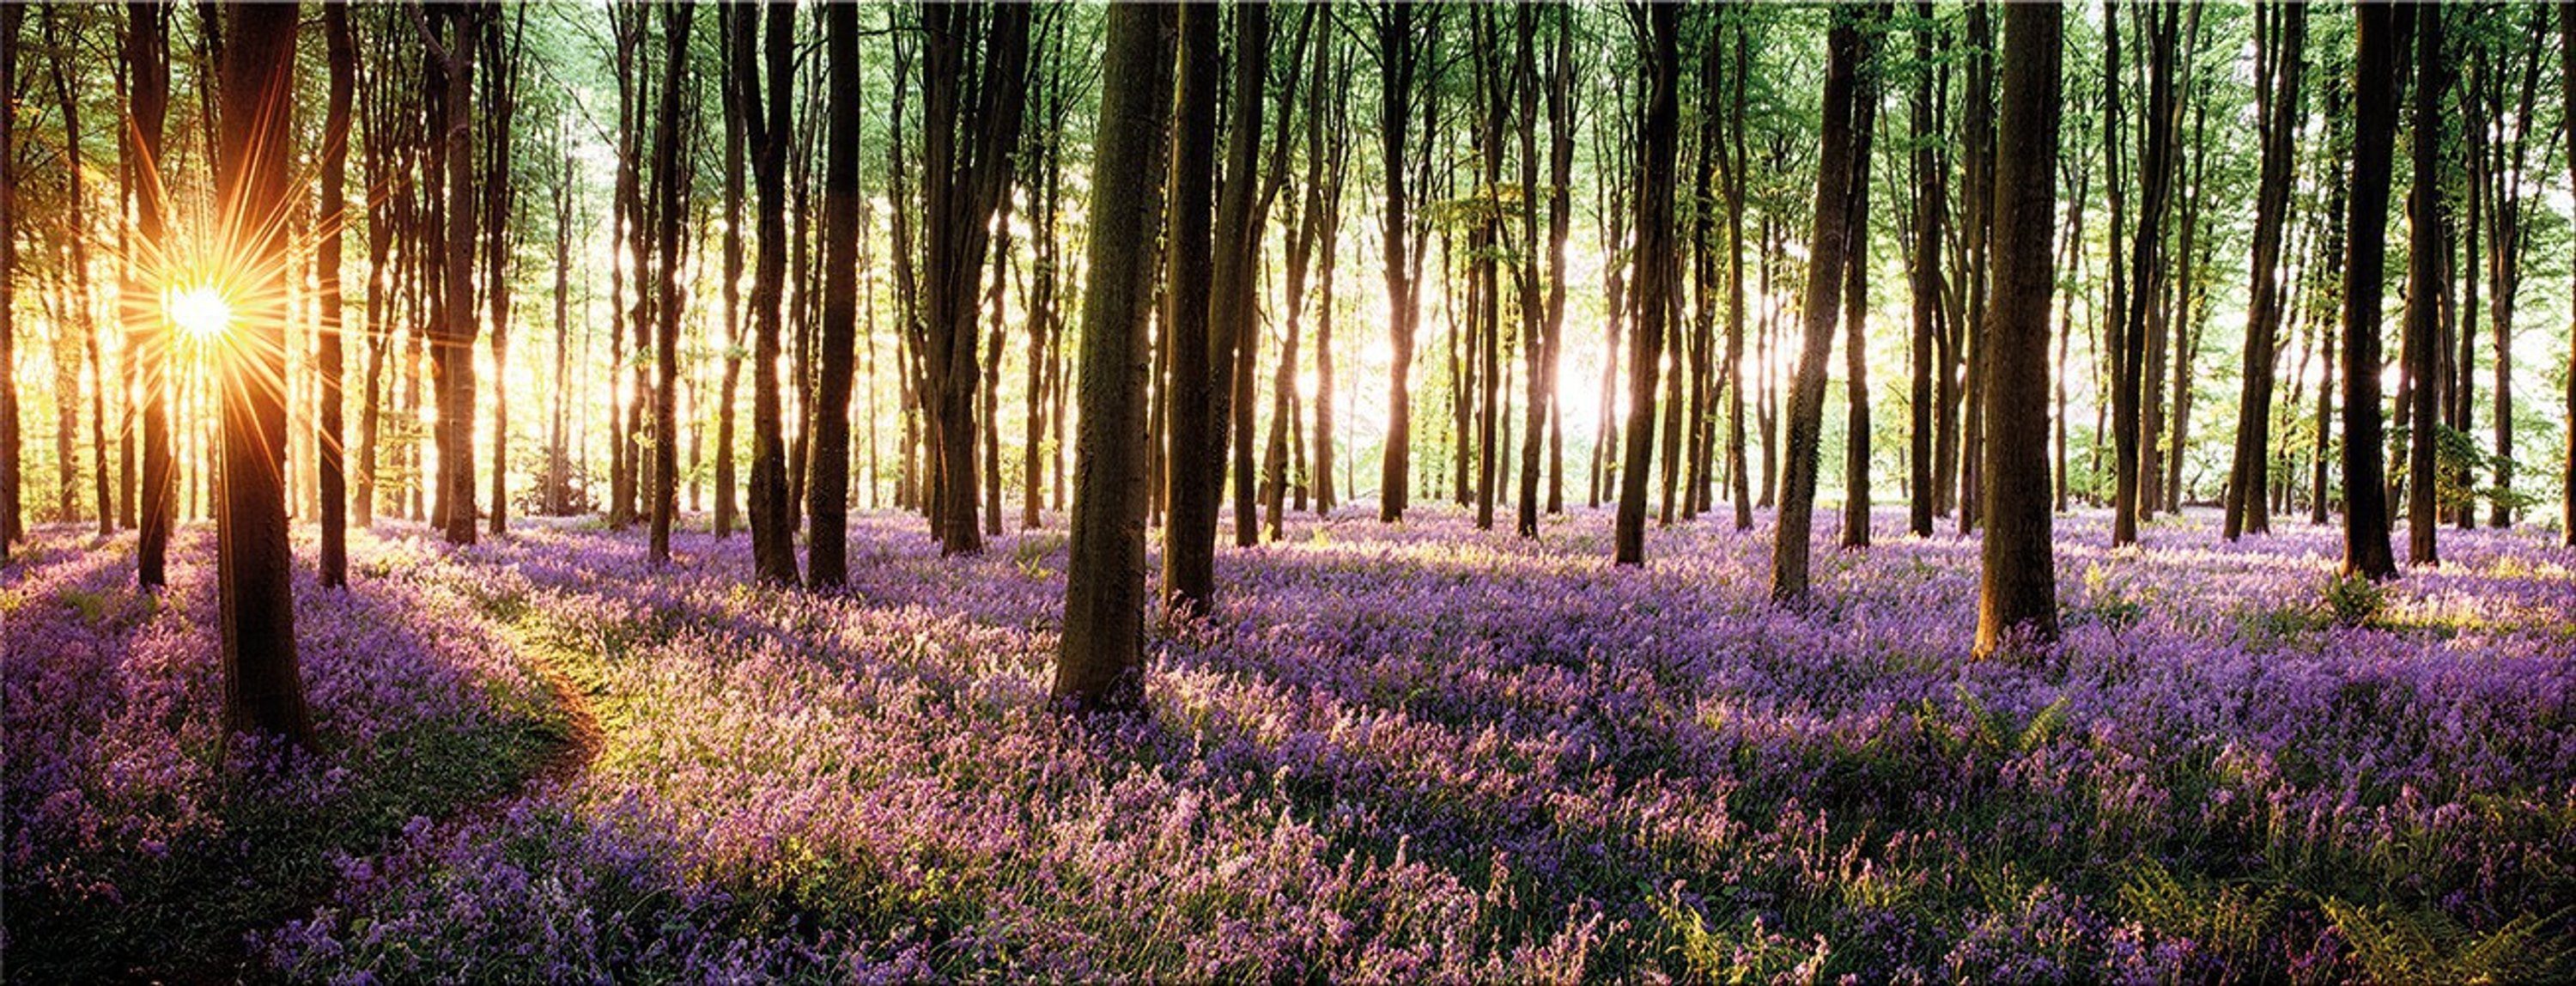 artissimo Glasbild Glasbild 80x30cm Bild aus Glas Sonnenaufgang Wald Baum Lavendel lila, Landschaft: Lichtung